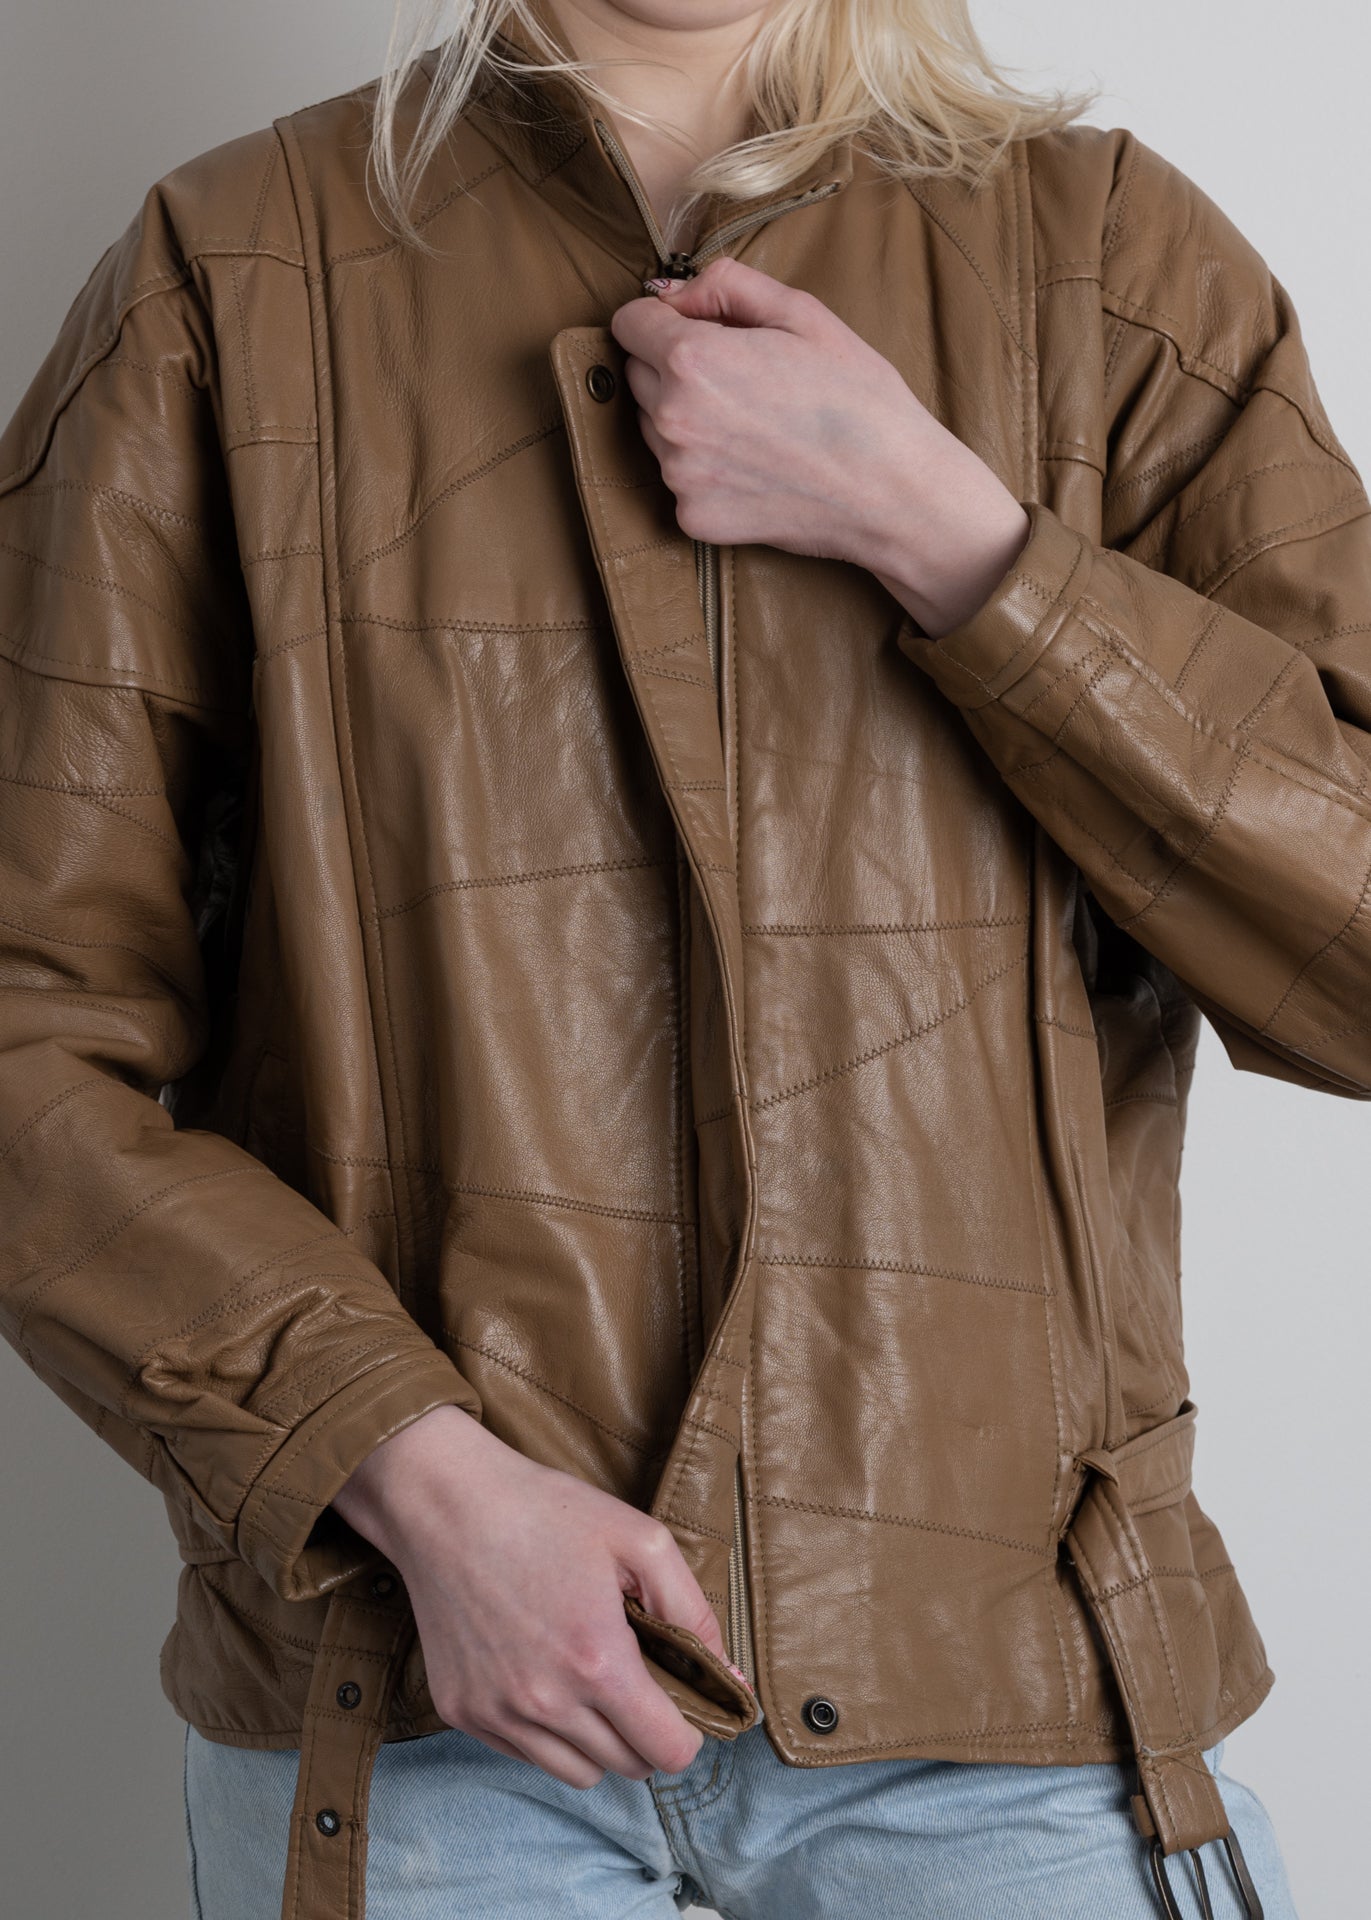 Vintage Brown Oversized Leather Jacket